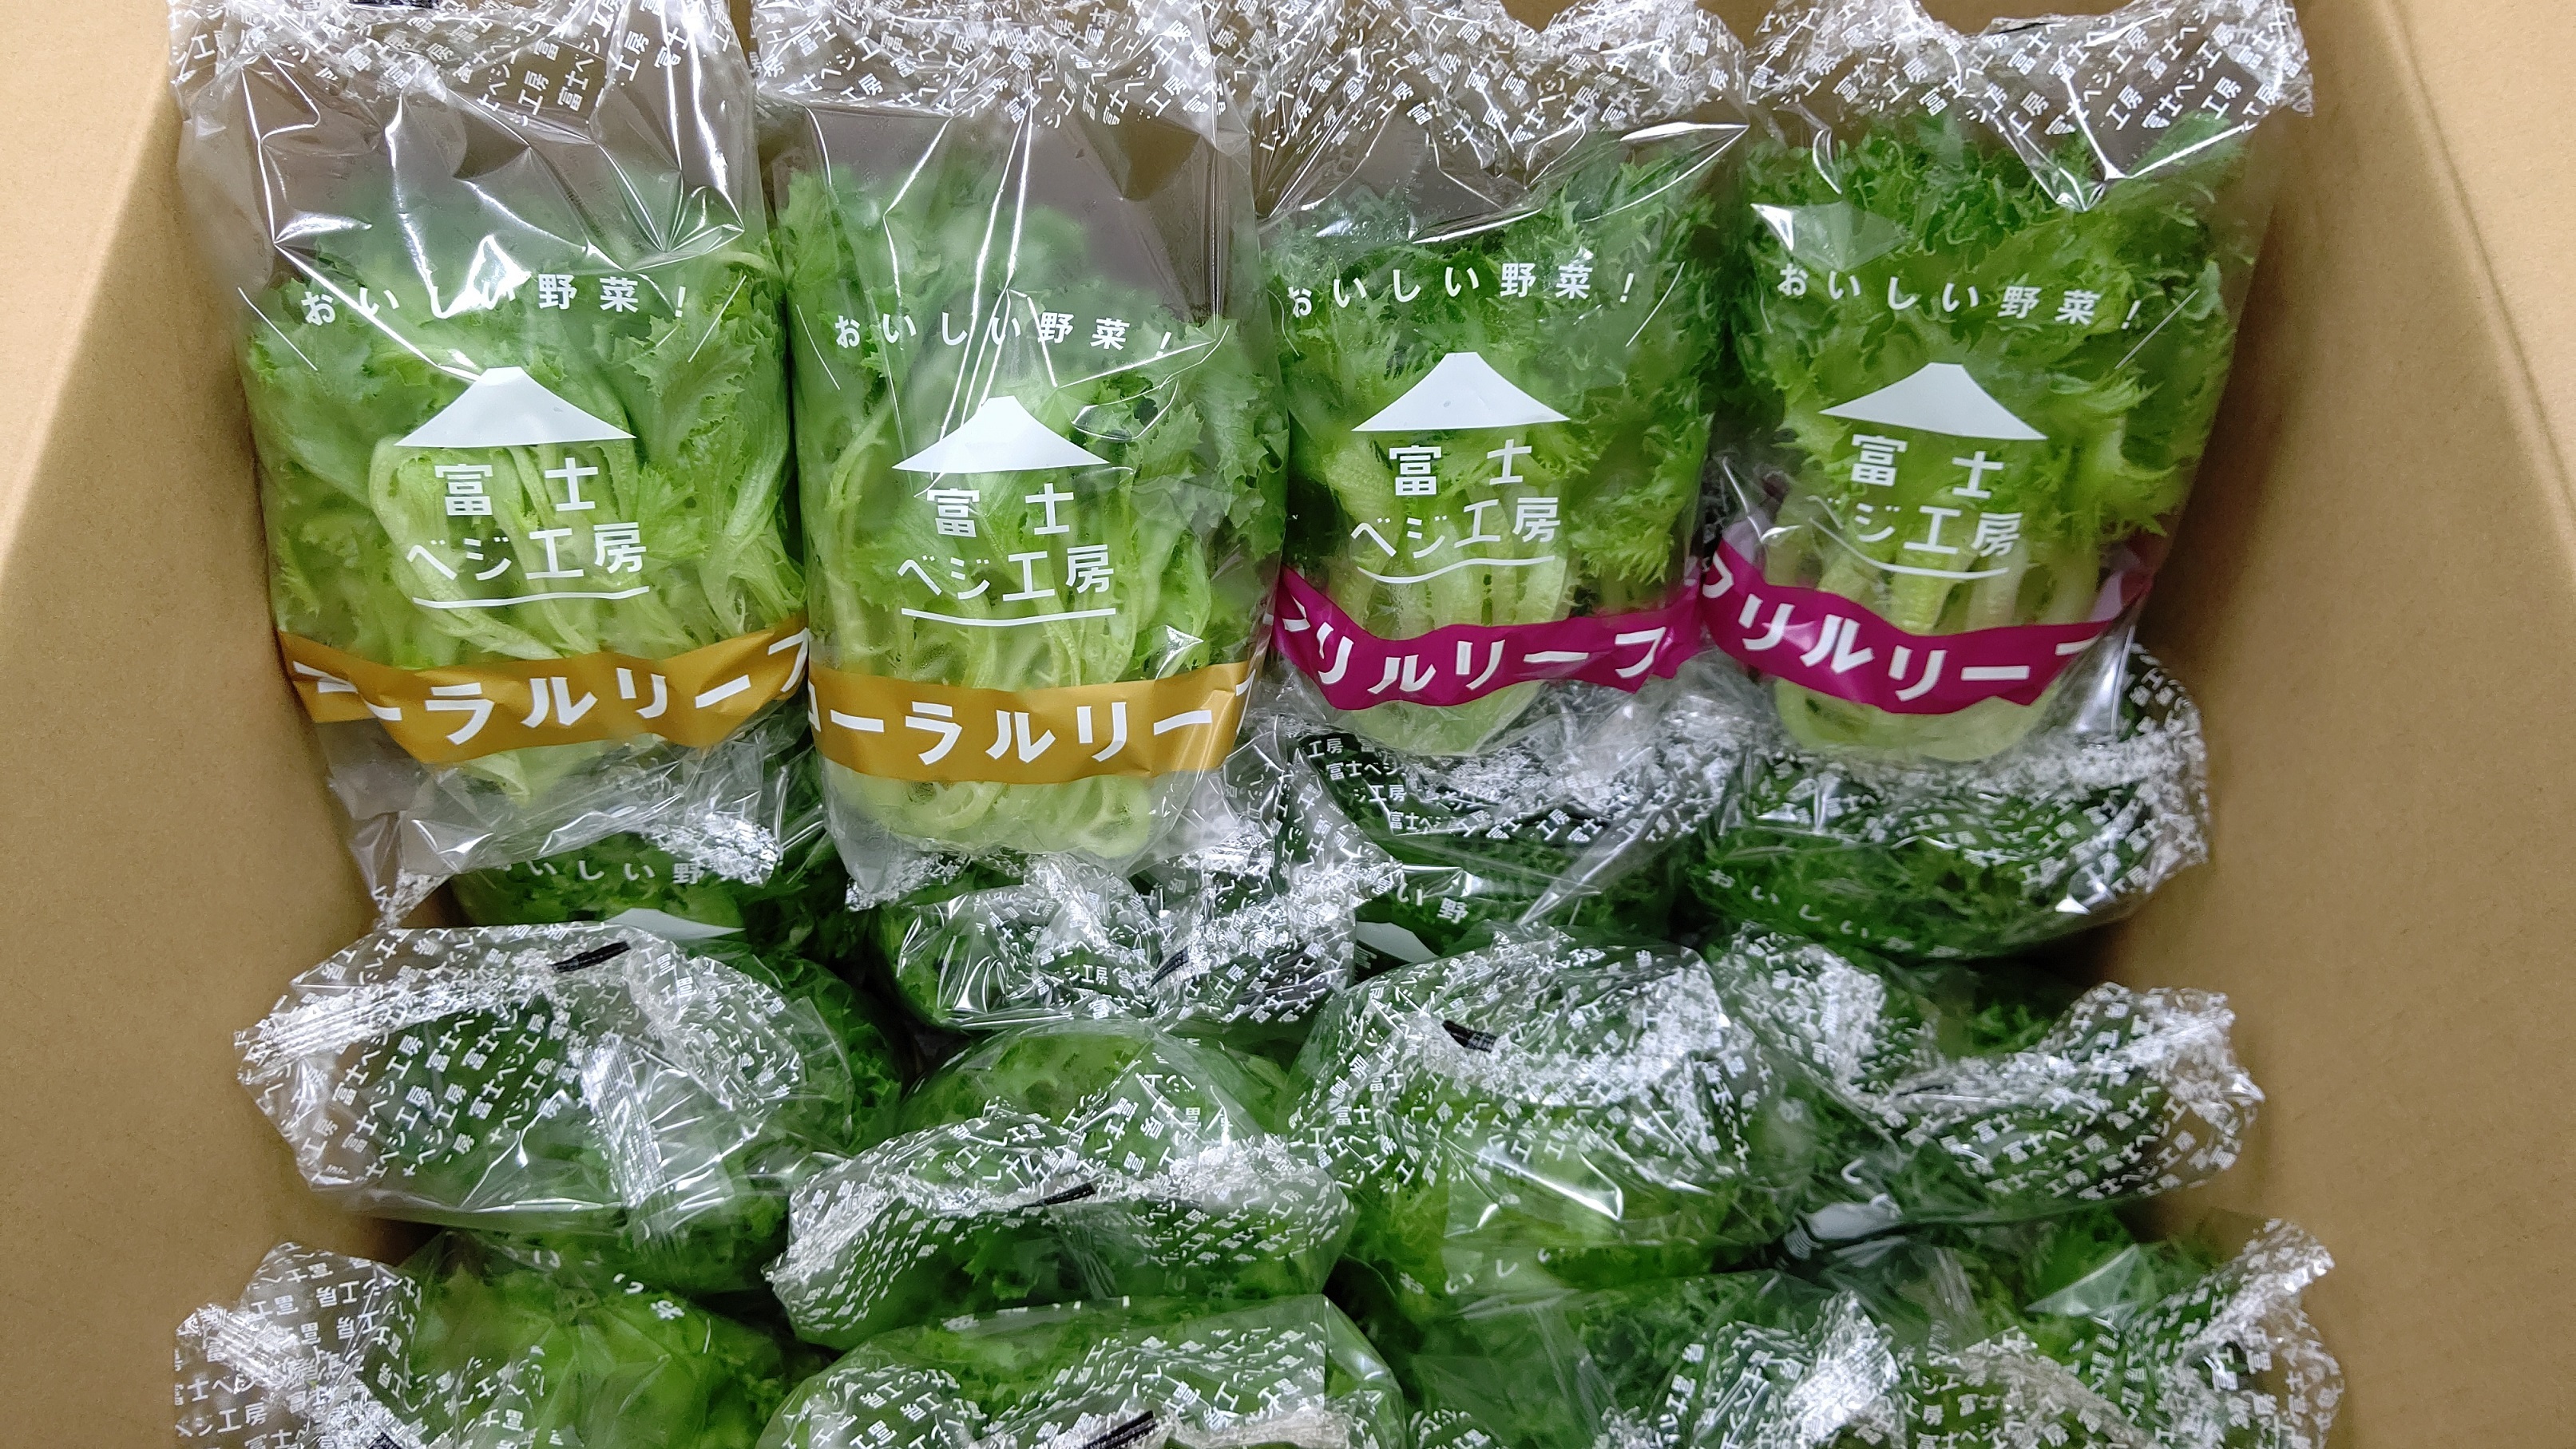 小林クリエイト 自社植物工場の野菜を静岡県内の児童養護施設と老人ホームに無償提供 小林クリエイト株式会社のプレスリリース